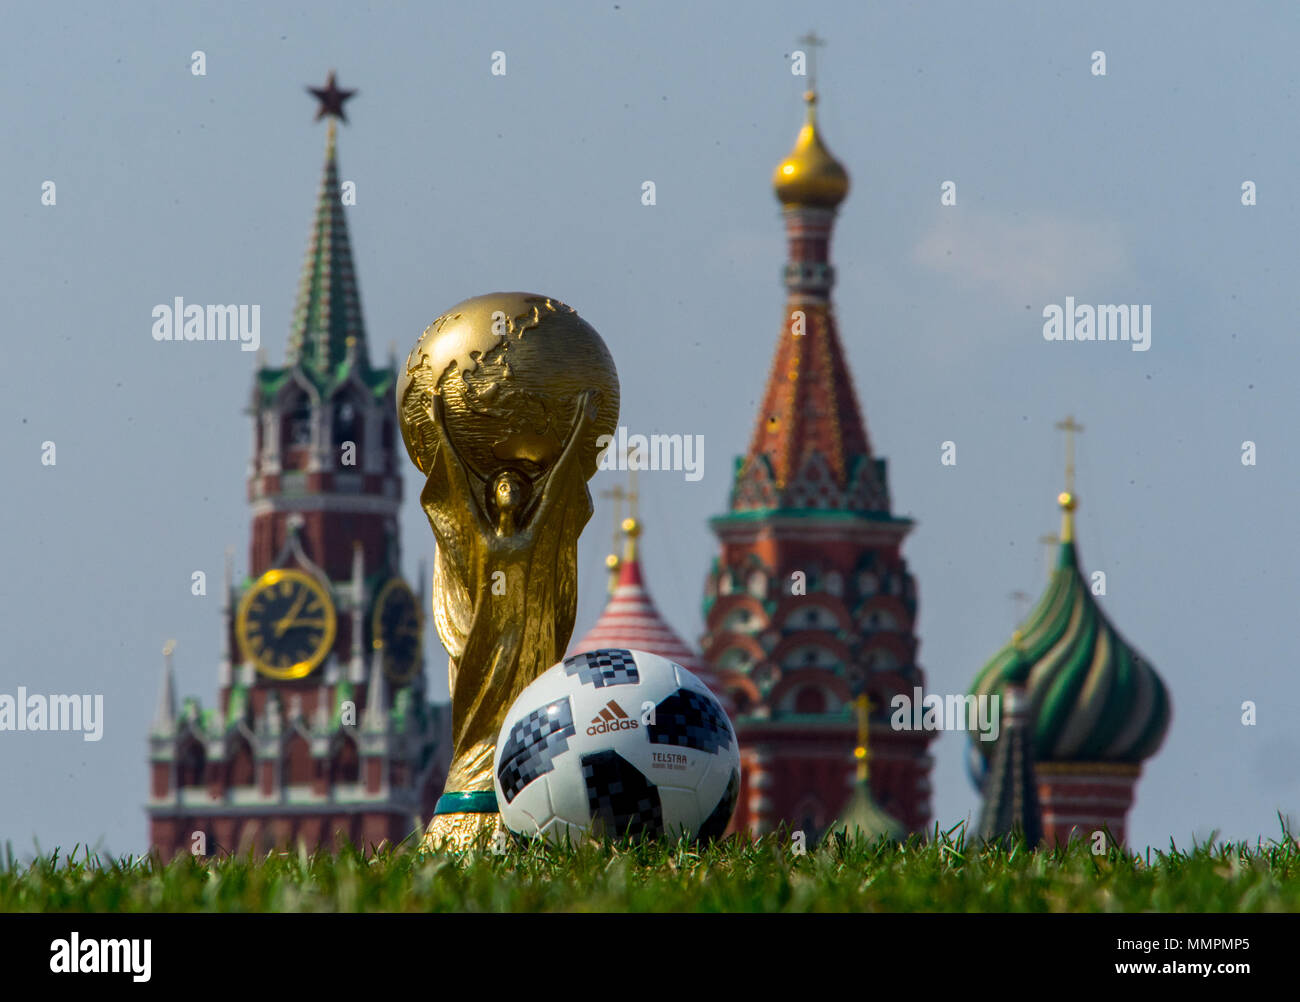 Aprile 16, 2018 Mosca. In Russia il trofeo della Coppa del Mondo FIFA e Palla ufficiale della Coppa del Mondo FIFA 2018 Adidas Telstar 18 sulla Piazza Rossa di Mosca. Foto Stock